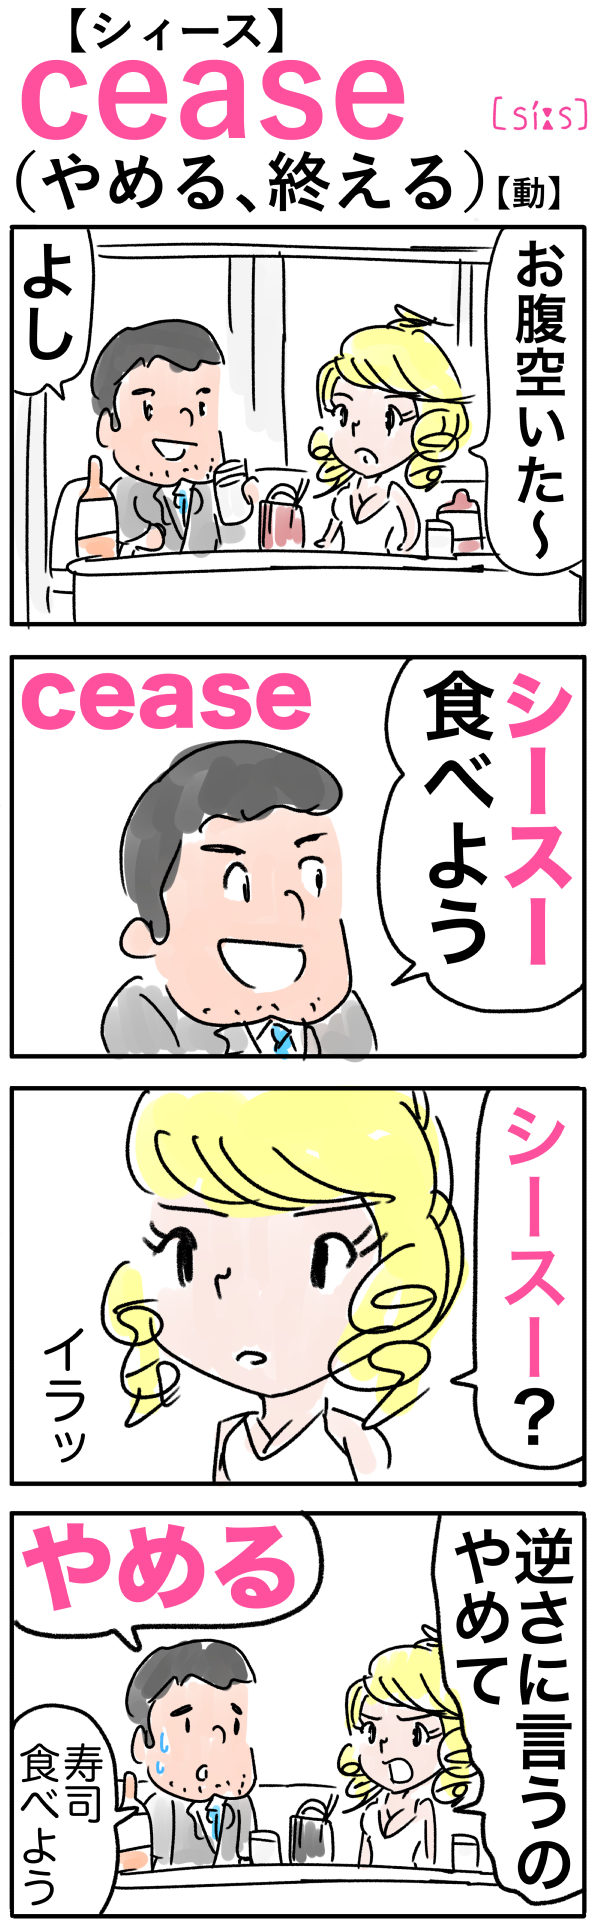 cease（やめる）の語呂合わせ英単語